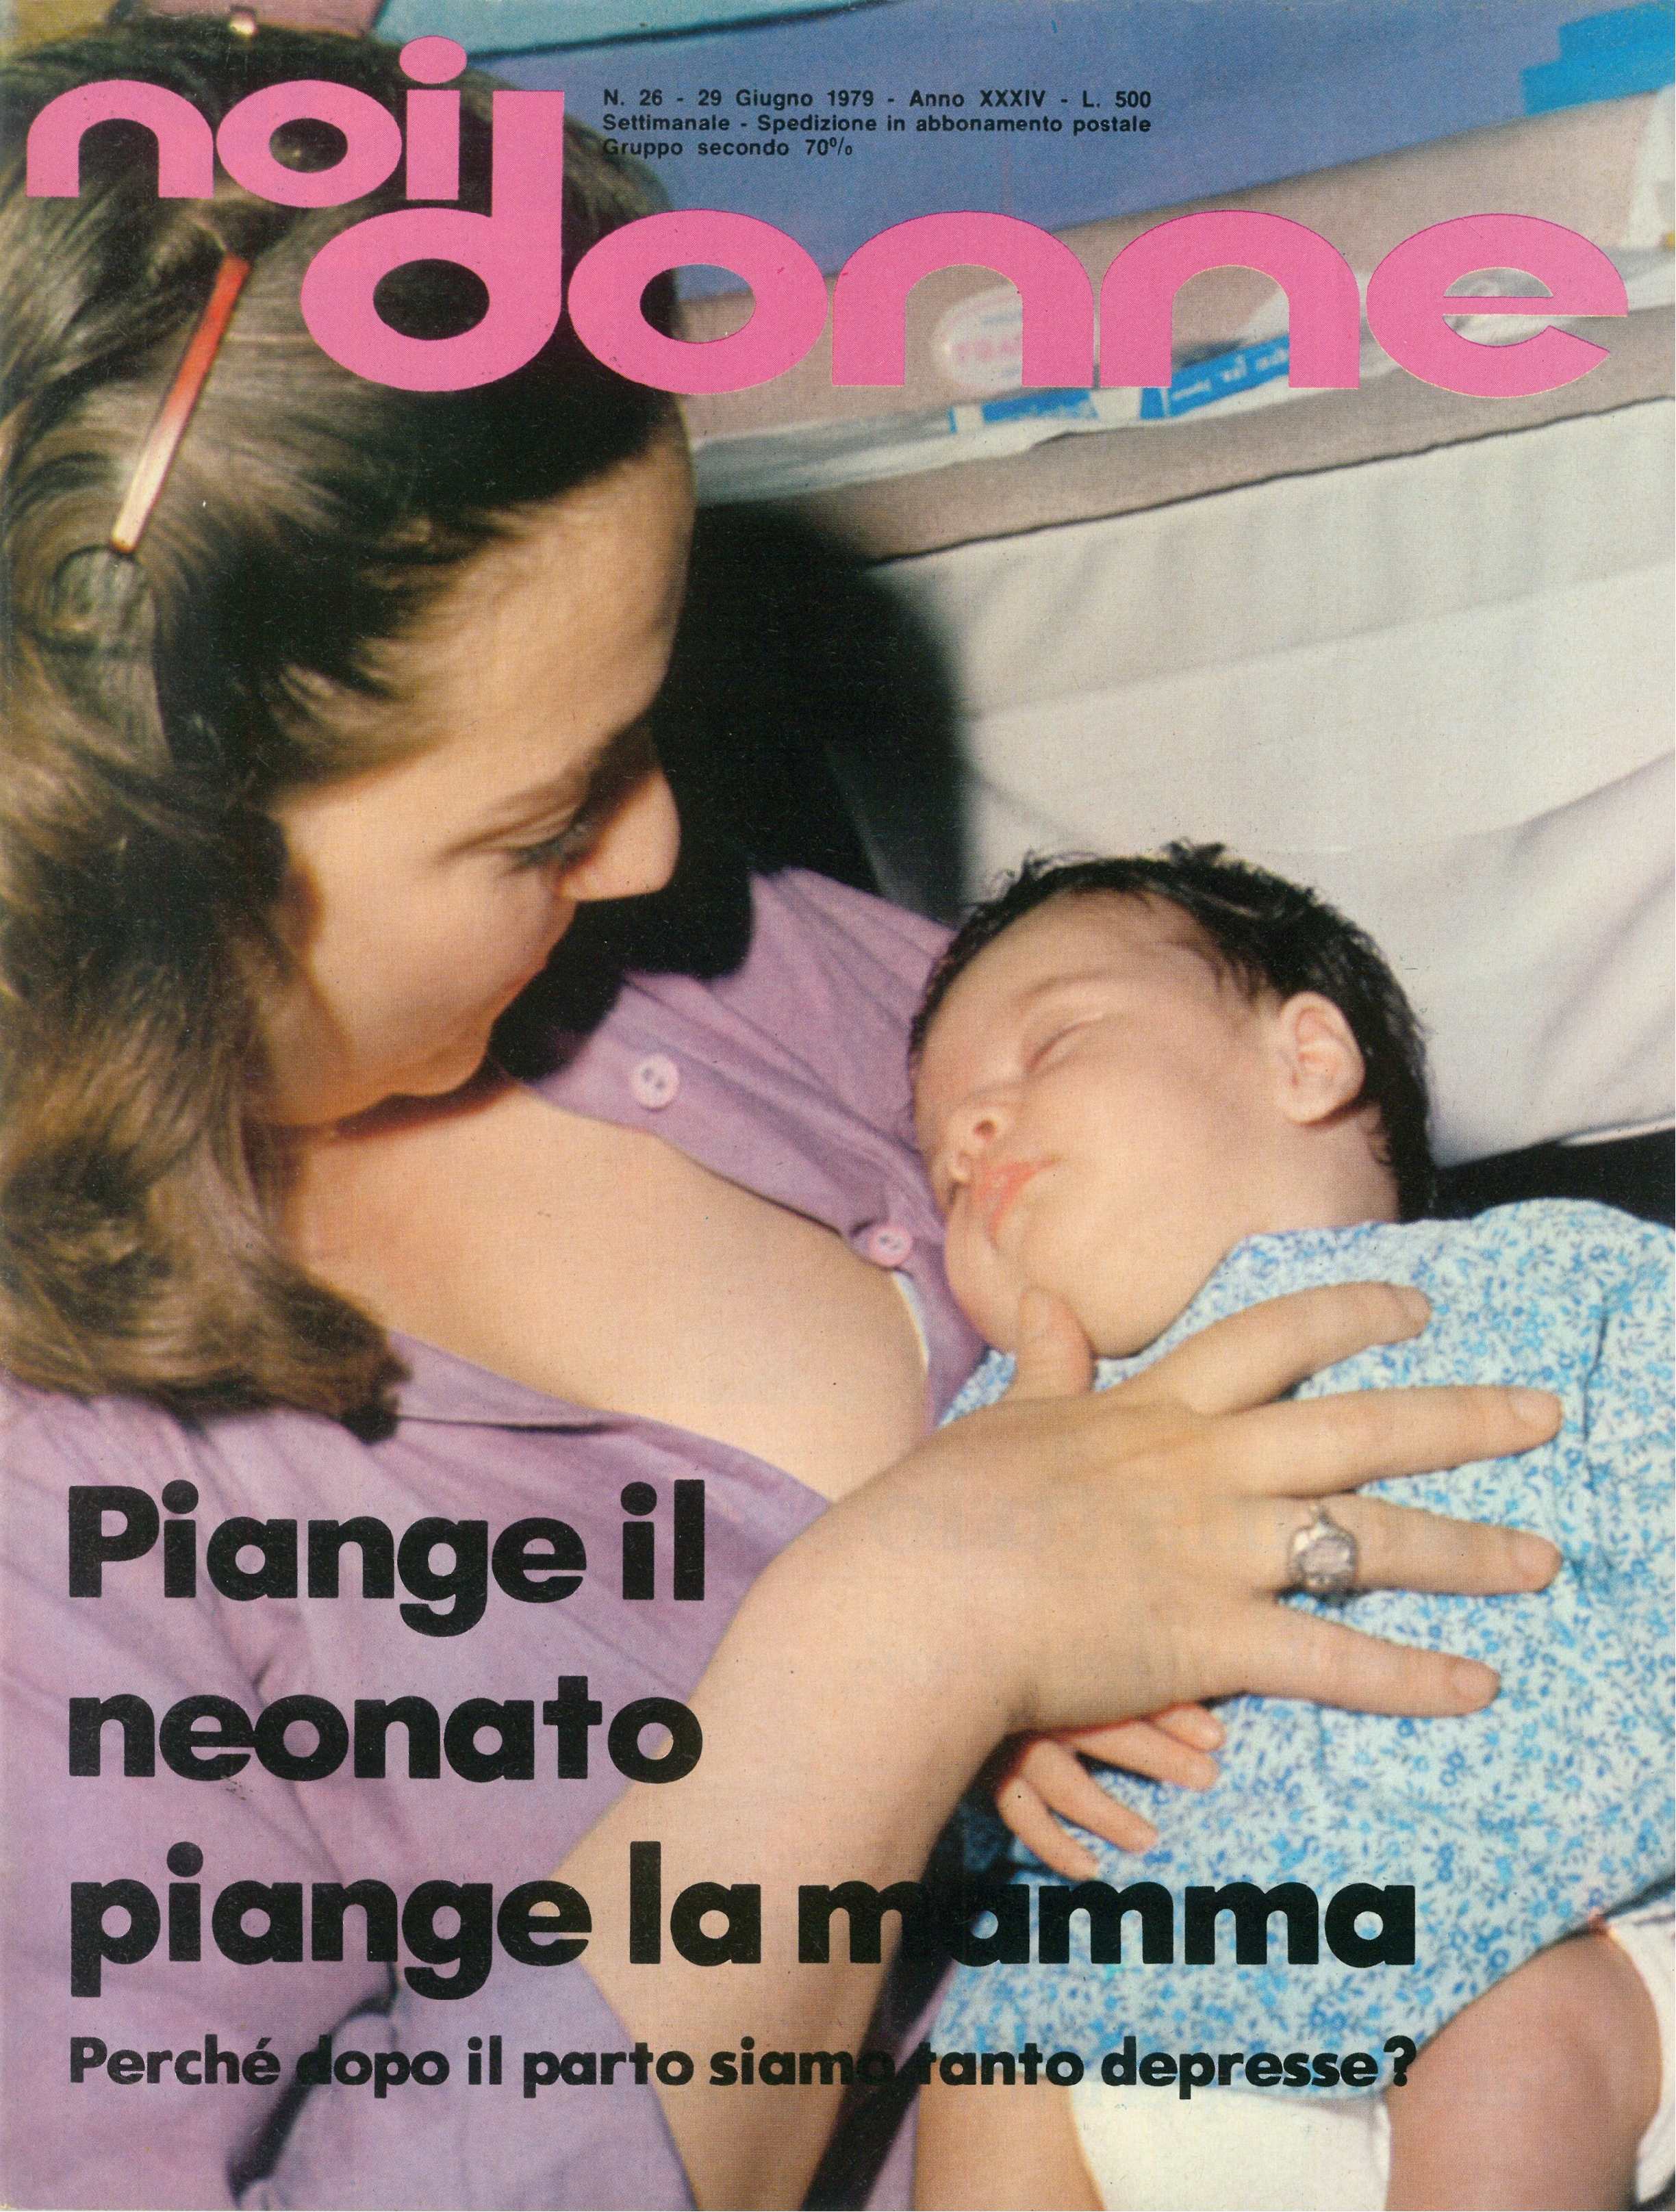 Foto: Piange il neonato